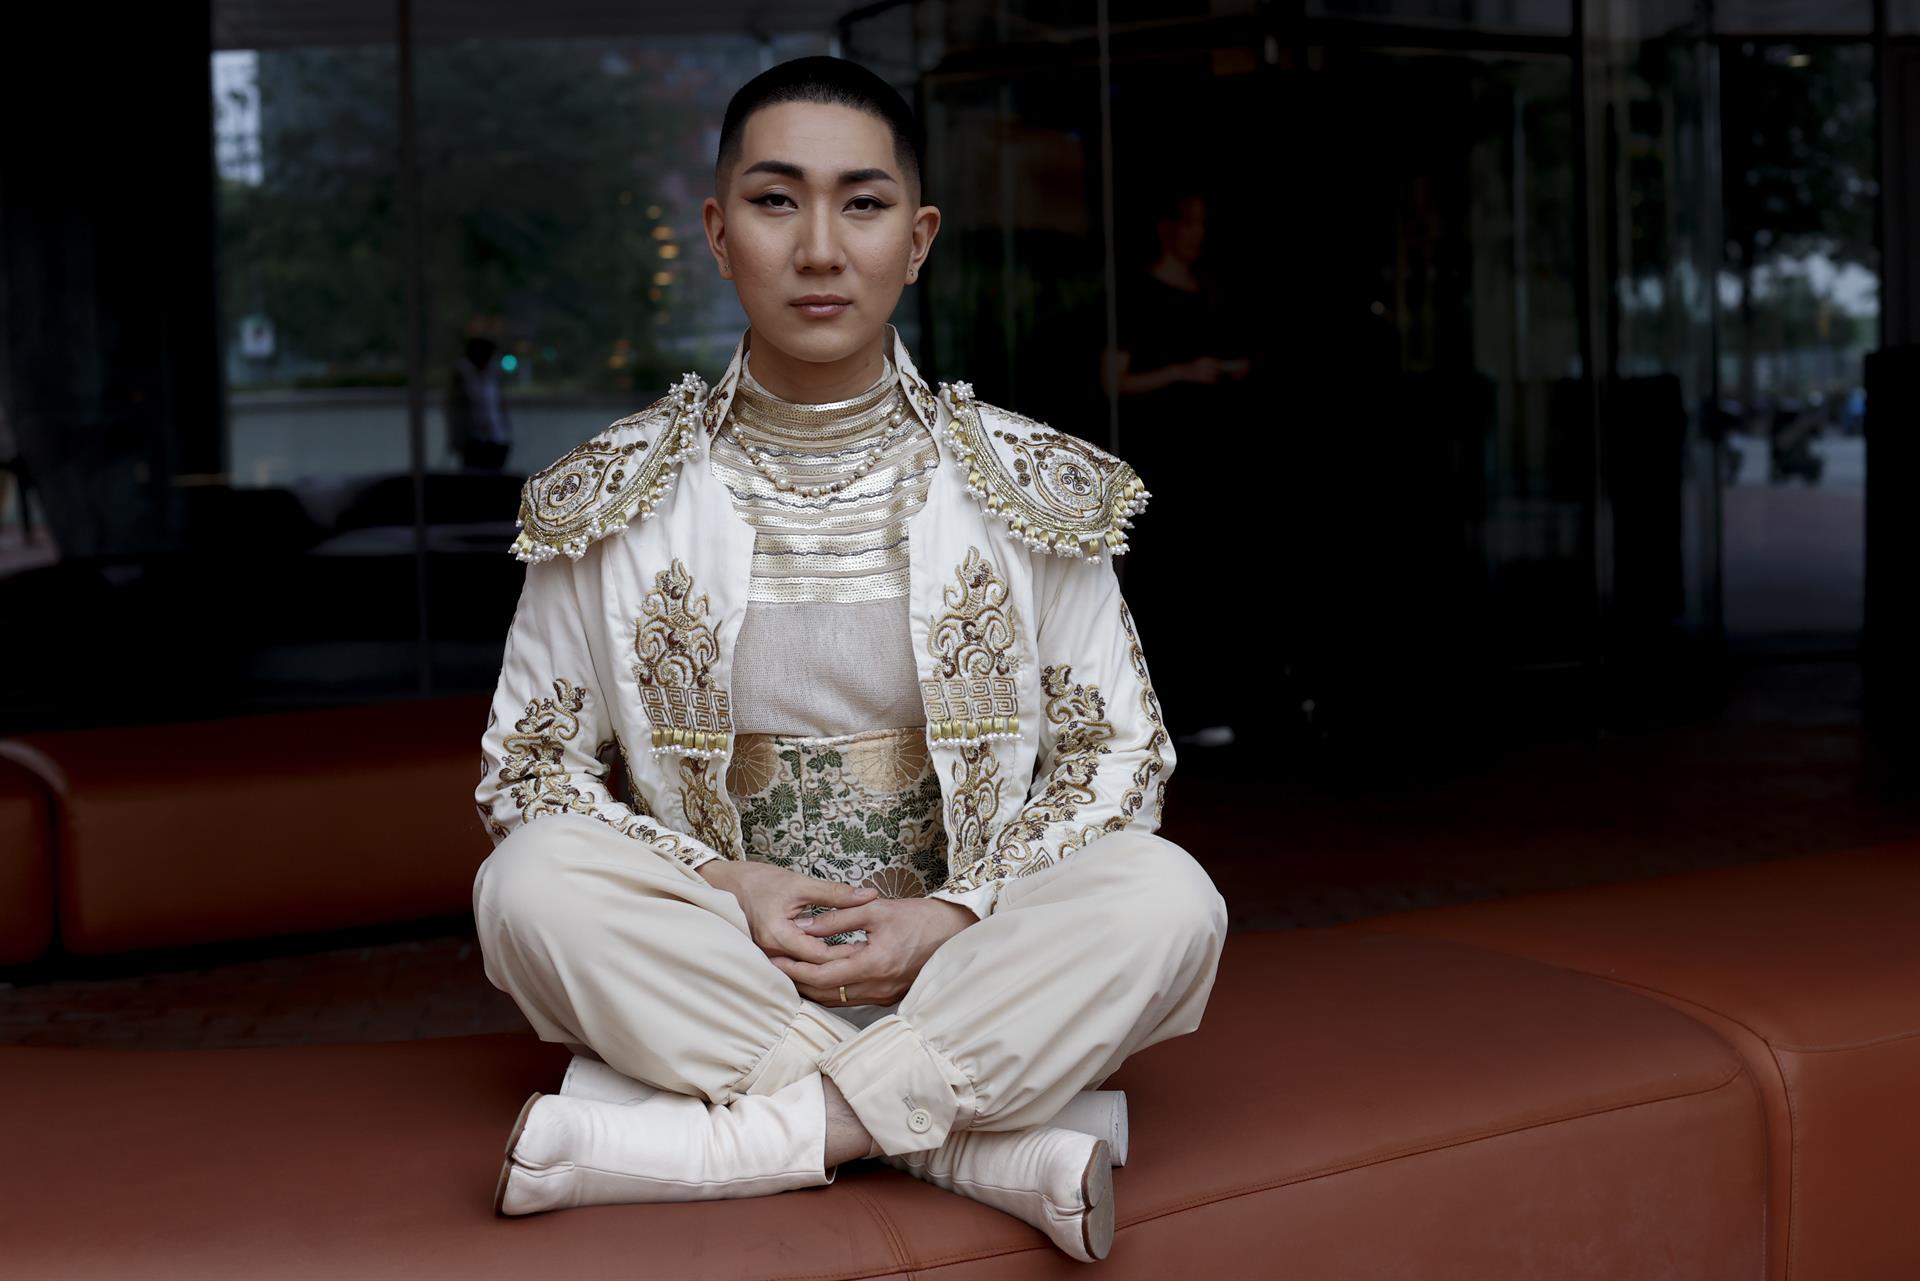 La historia de Kodo Nishimura: el monje budista que “usa tacones”, activista Lgtbi y maquilló a la primera Miss Universo trans